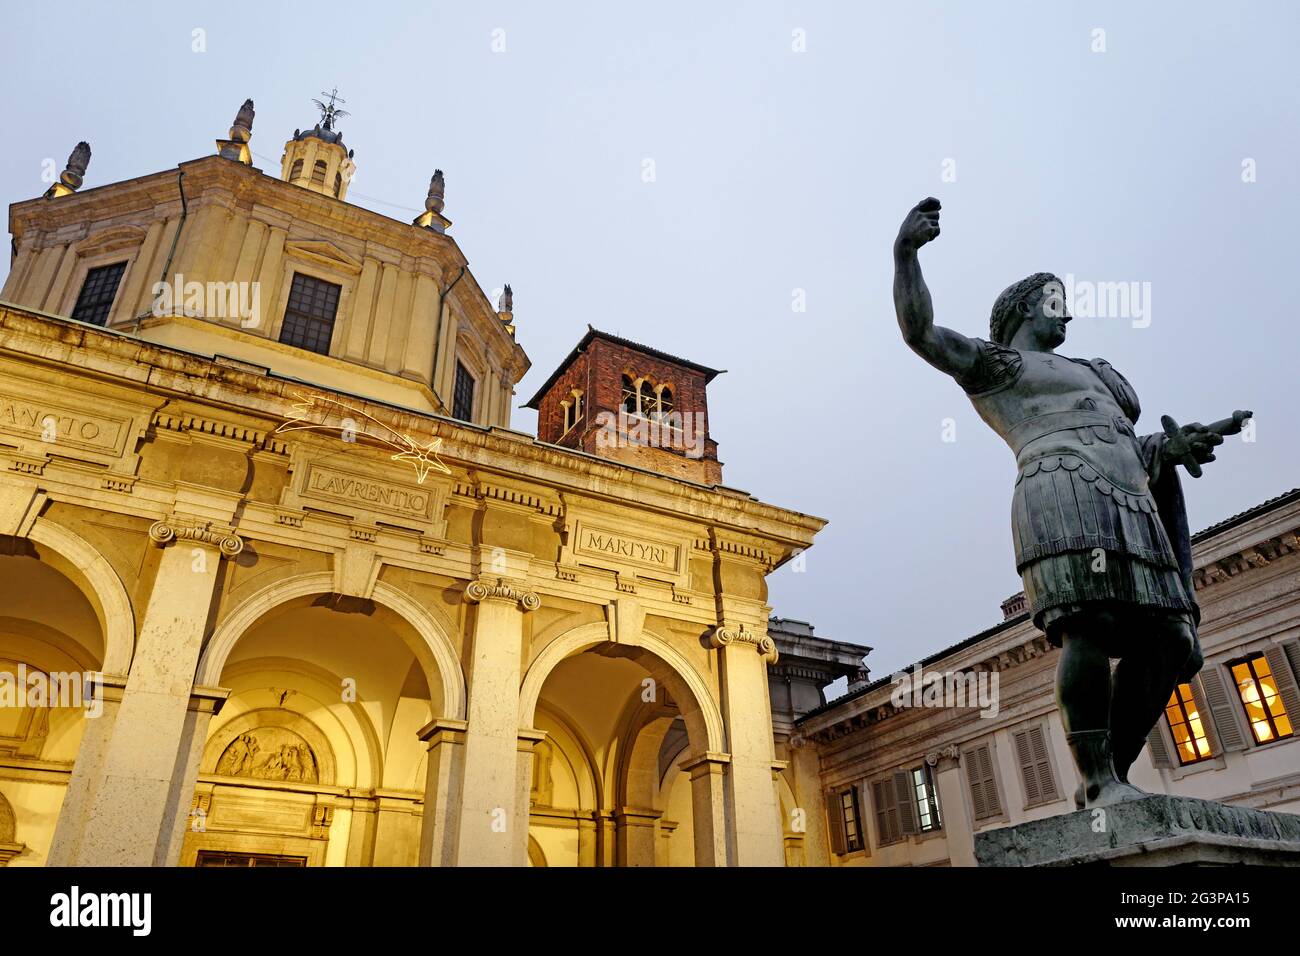 La statue de l'empereur romain Constantine et de l'église romaine Saint Lorenzo illuminée la nuit, à Milan. Italie. Banque D'Images